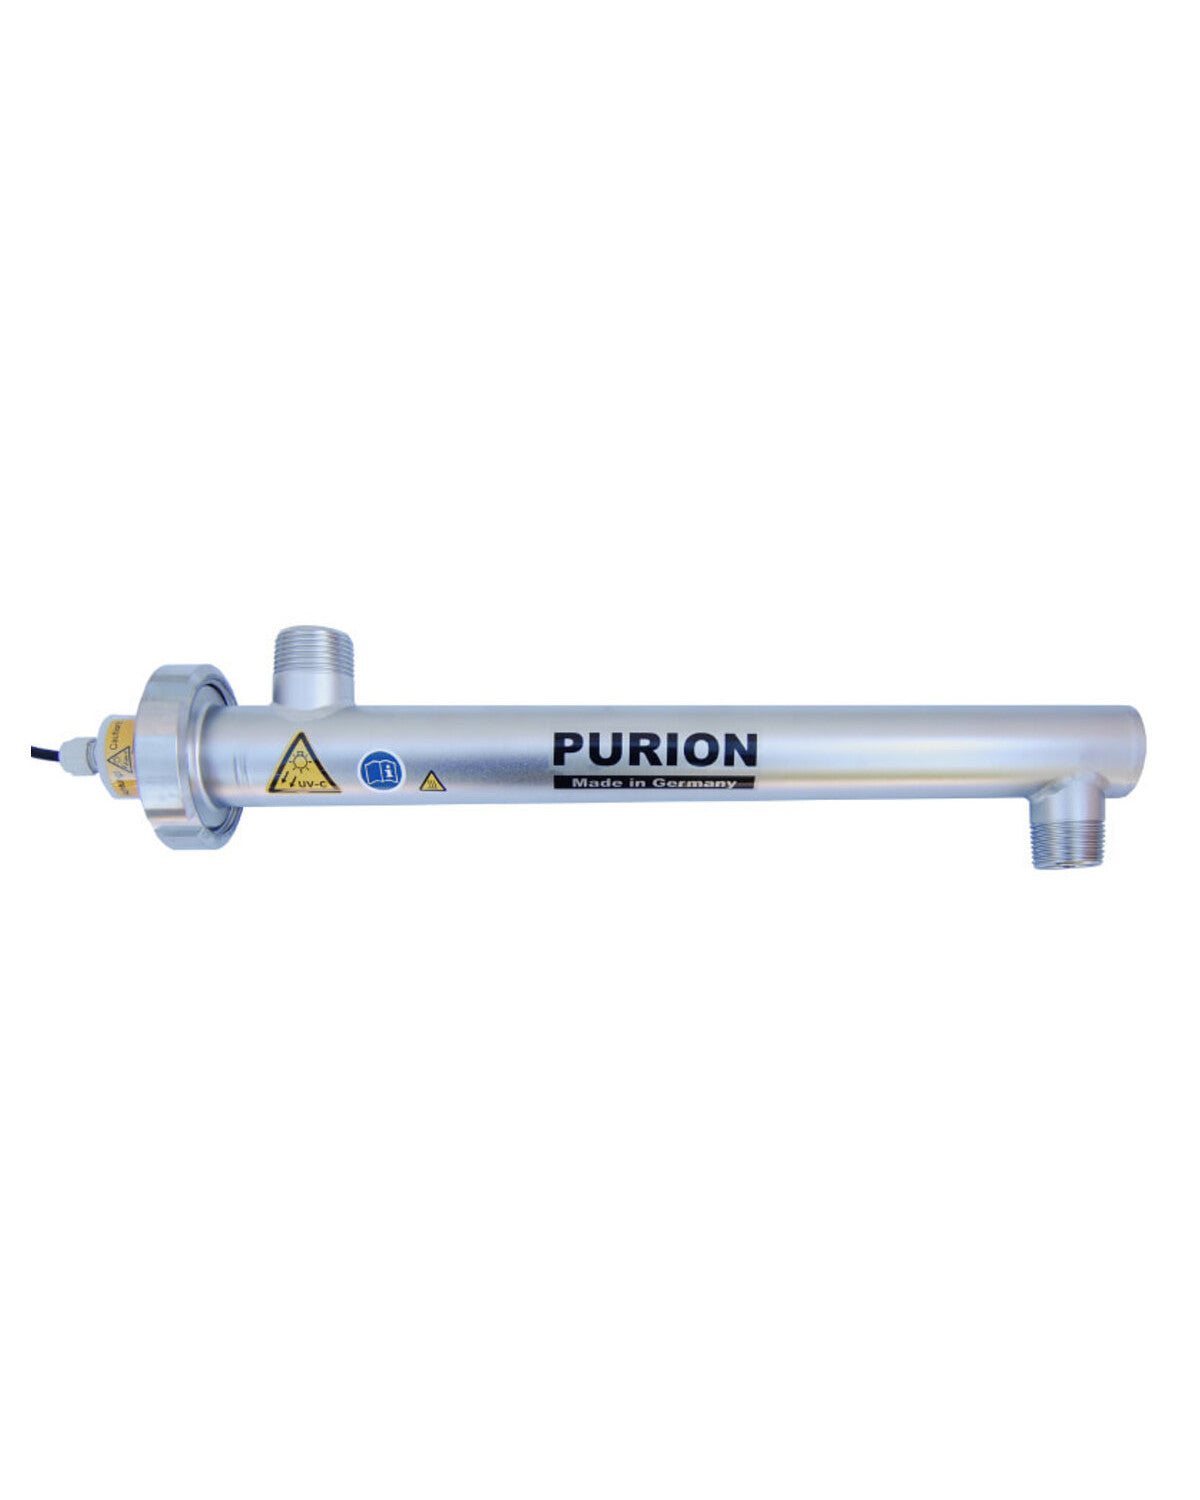 Wir stellen den PURION 1000 Starter vor, einen revolutionären UV-Filter für Trinkwasser von der PURION GmbH.